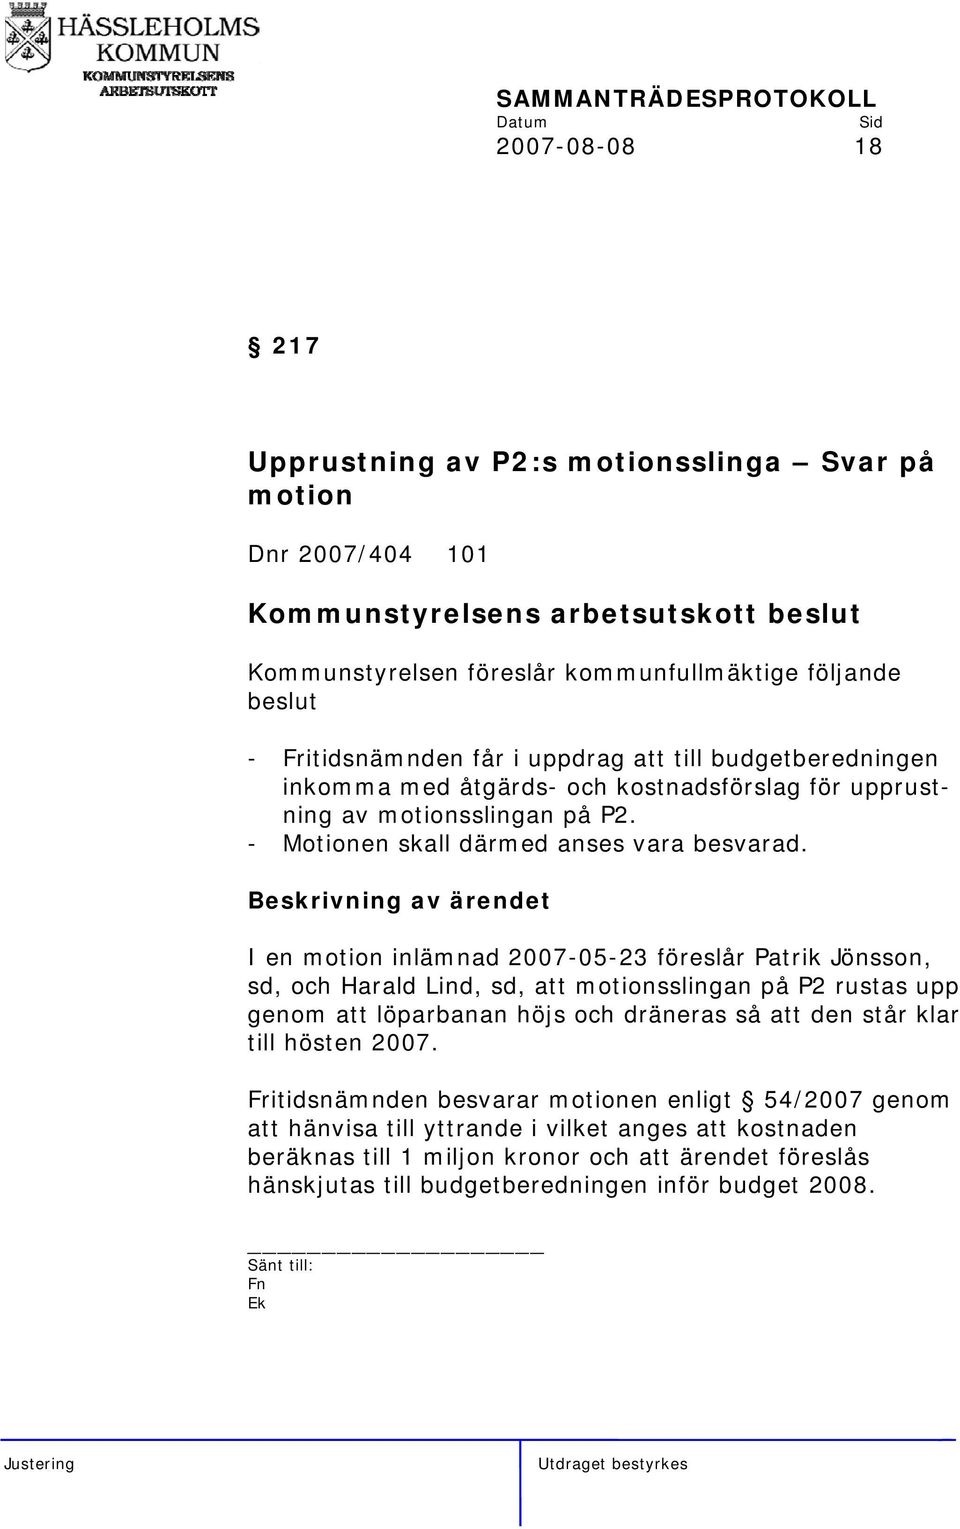 I en motion inlämnad 2007-05-23 föreslår Patrik Jönsson, sd, och Harald Lind, sd, att motionsslingan på P2 rustas upp genom att löparbanan höjs och dräneras så att den står klar till hösten 2007.